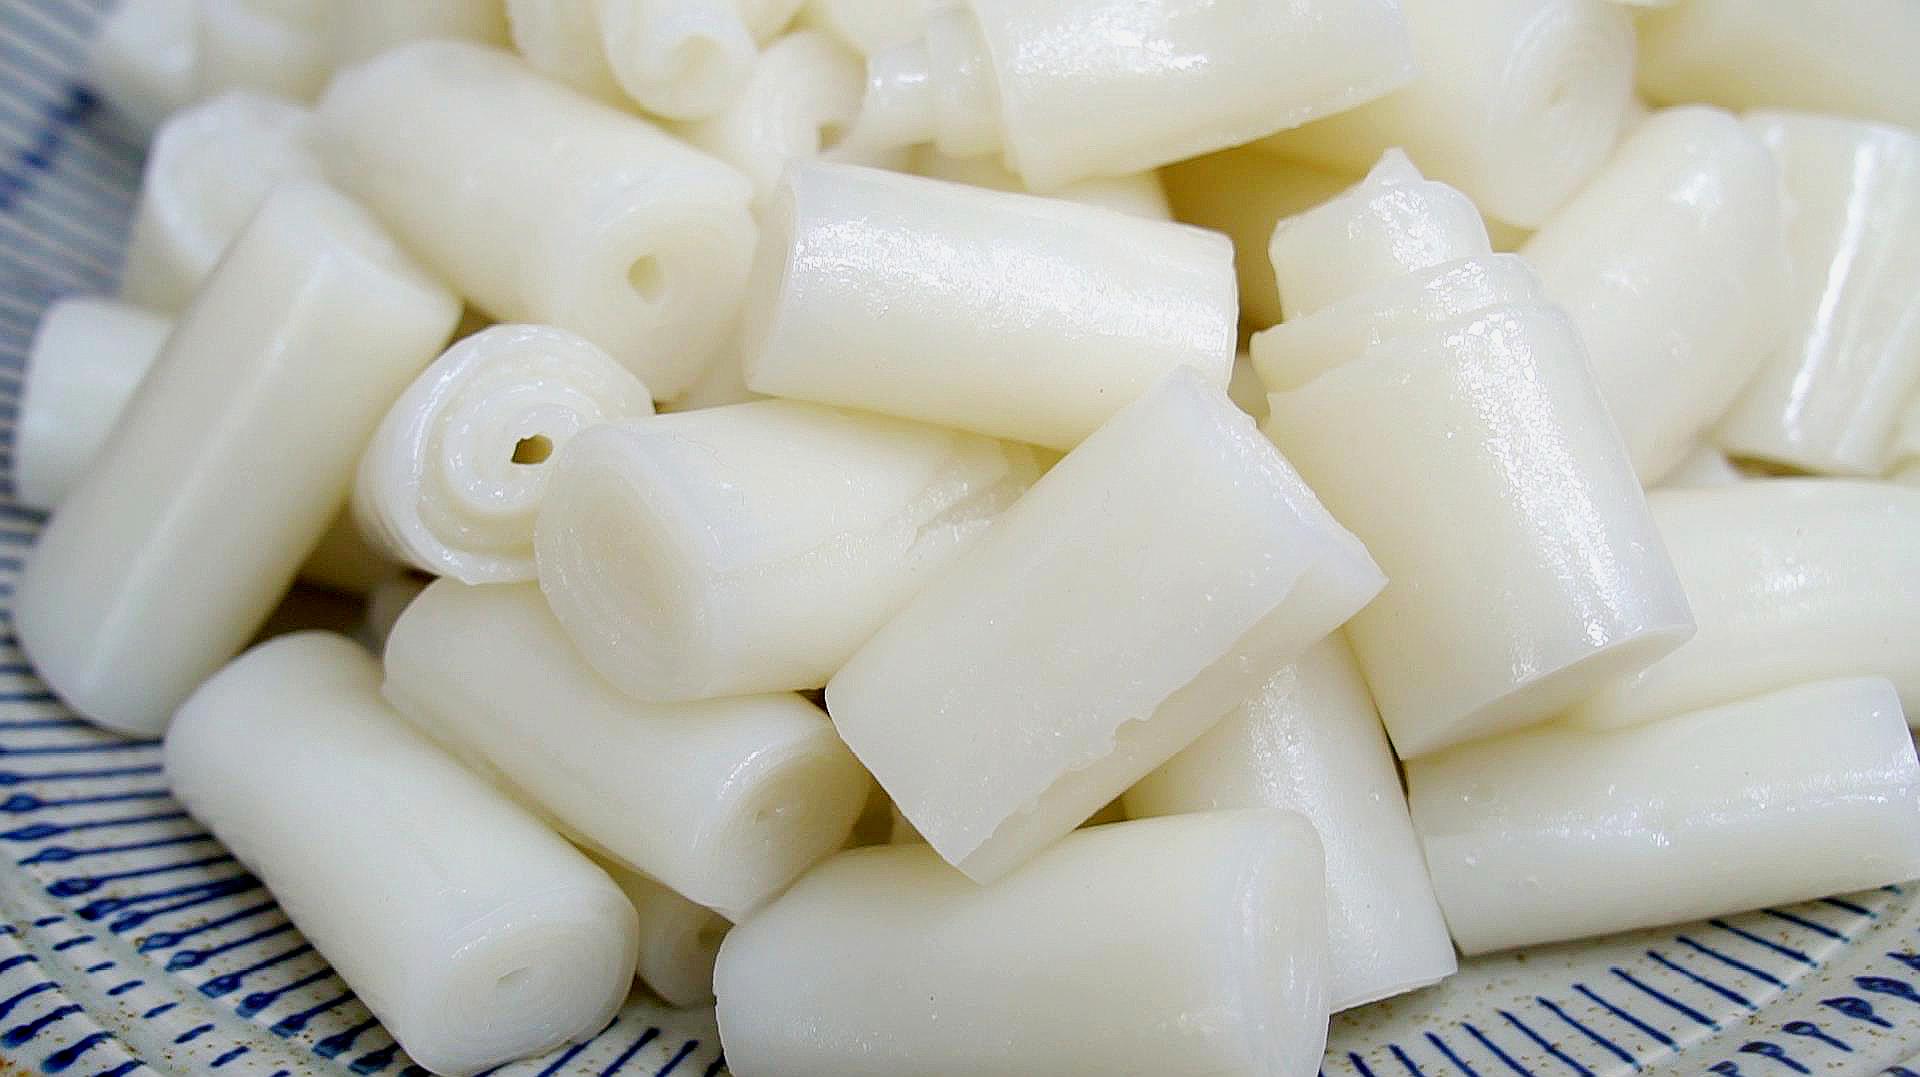 广东特色猪肠粉做法:自己在家就能做,q弹劲道,比买的还好吃